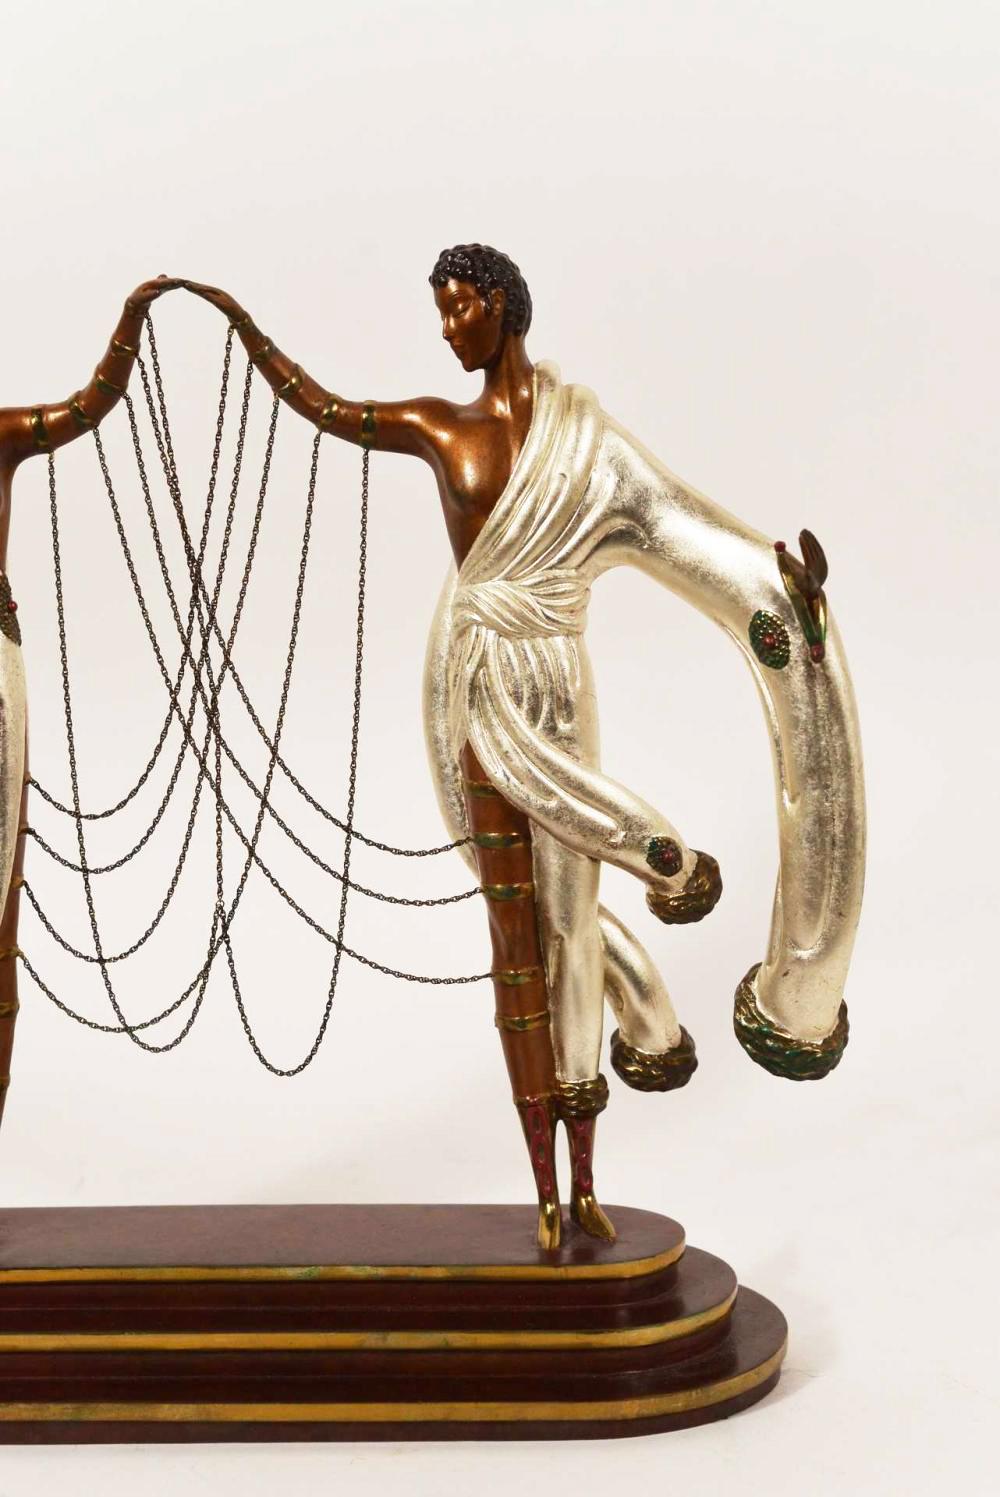 ERTE (ROMAIN DE TIRTOFF) 'THE WEDDING' BRONZE SCULPTURE - Sculpture by Erte - Romain de Tirtoff